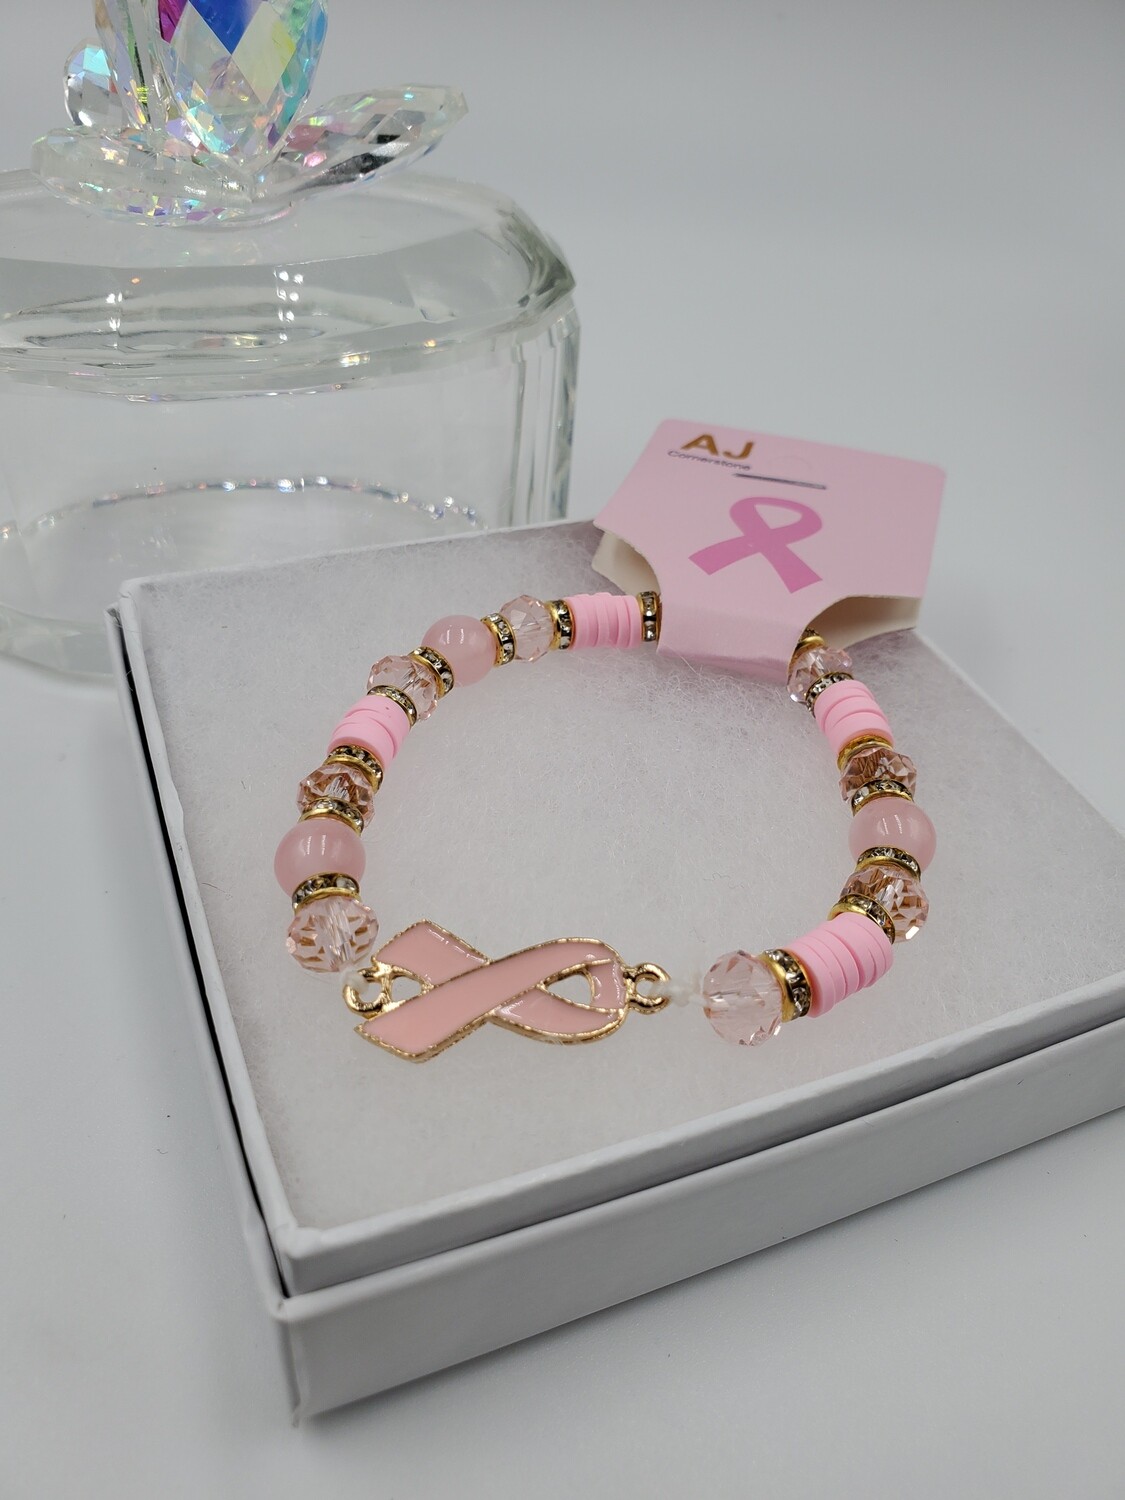 Bracelet: Cancer Awareness